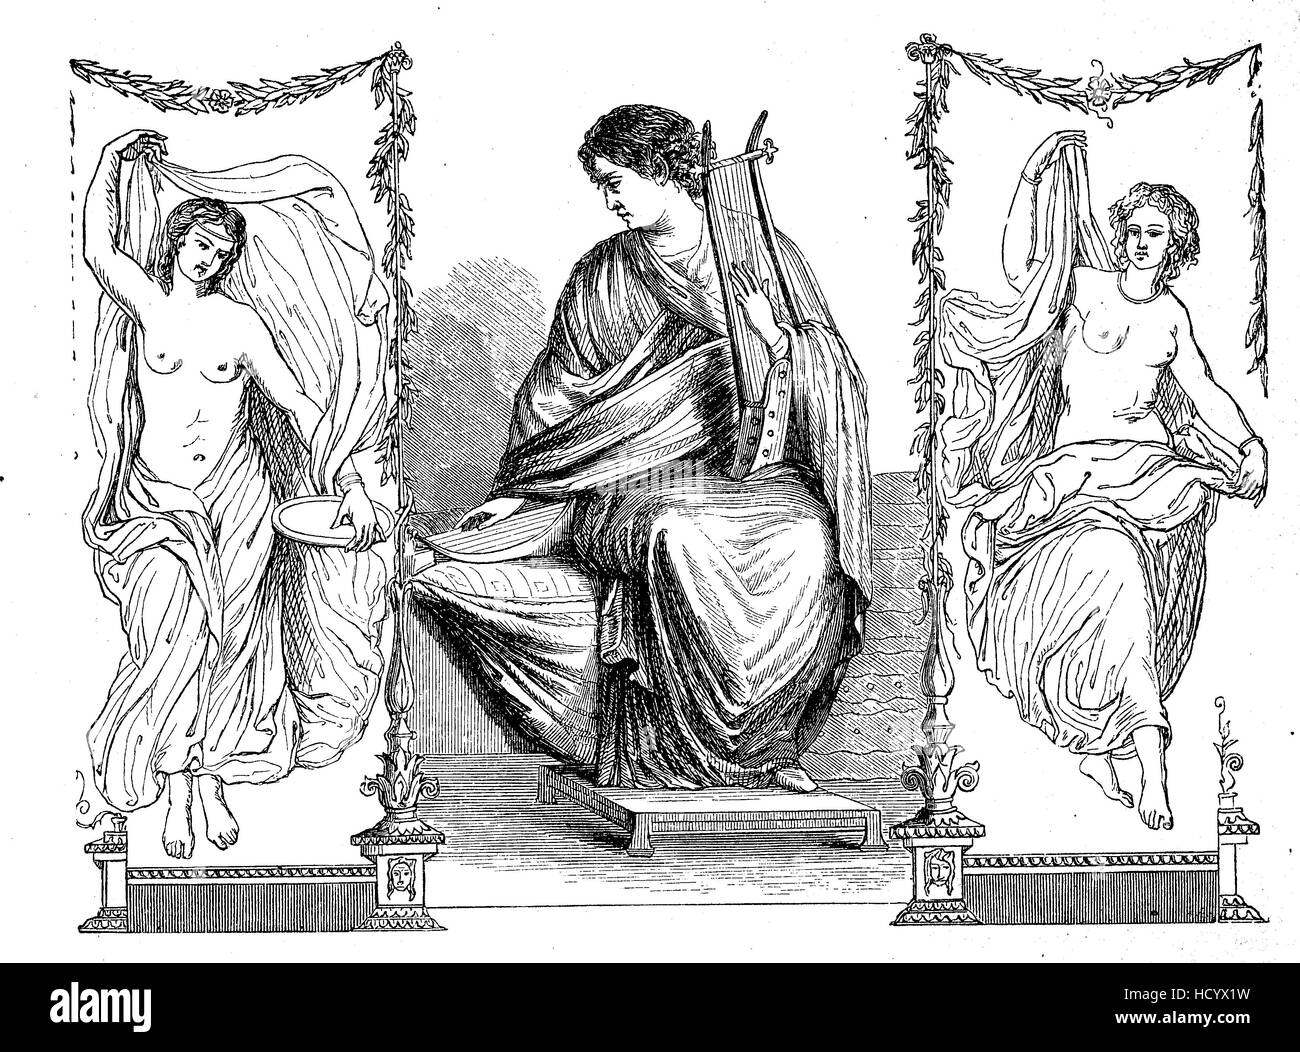 Wissenschaft und Poesie, ein Symbol aus dem alten Rom, 100 v. Chr., die Geschichte des antiken Rom, Römisches Reich, Italien Stockfoto